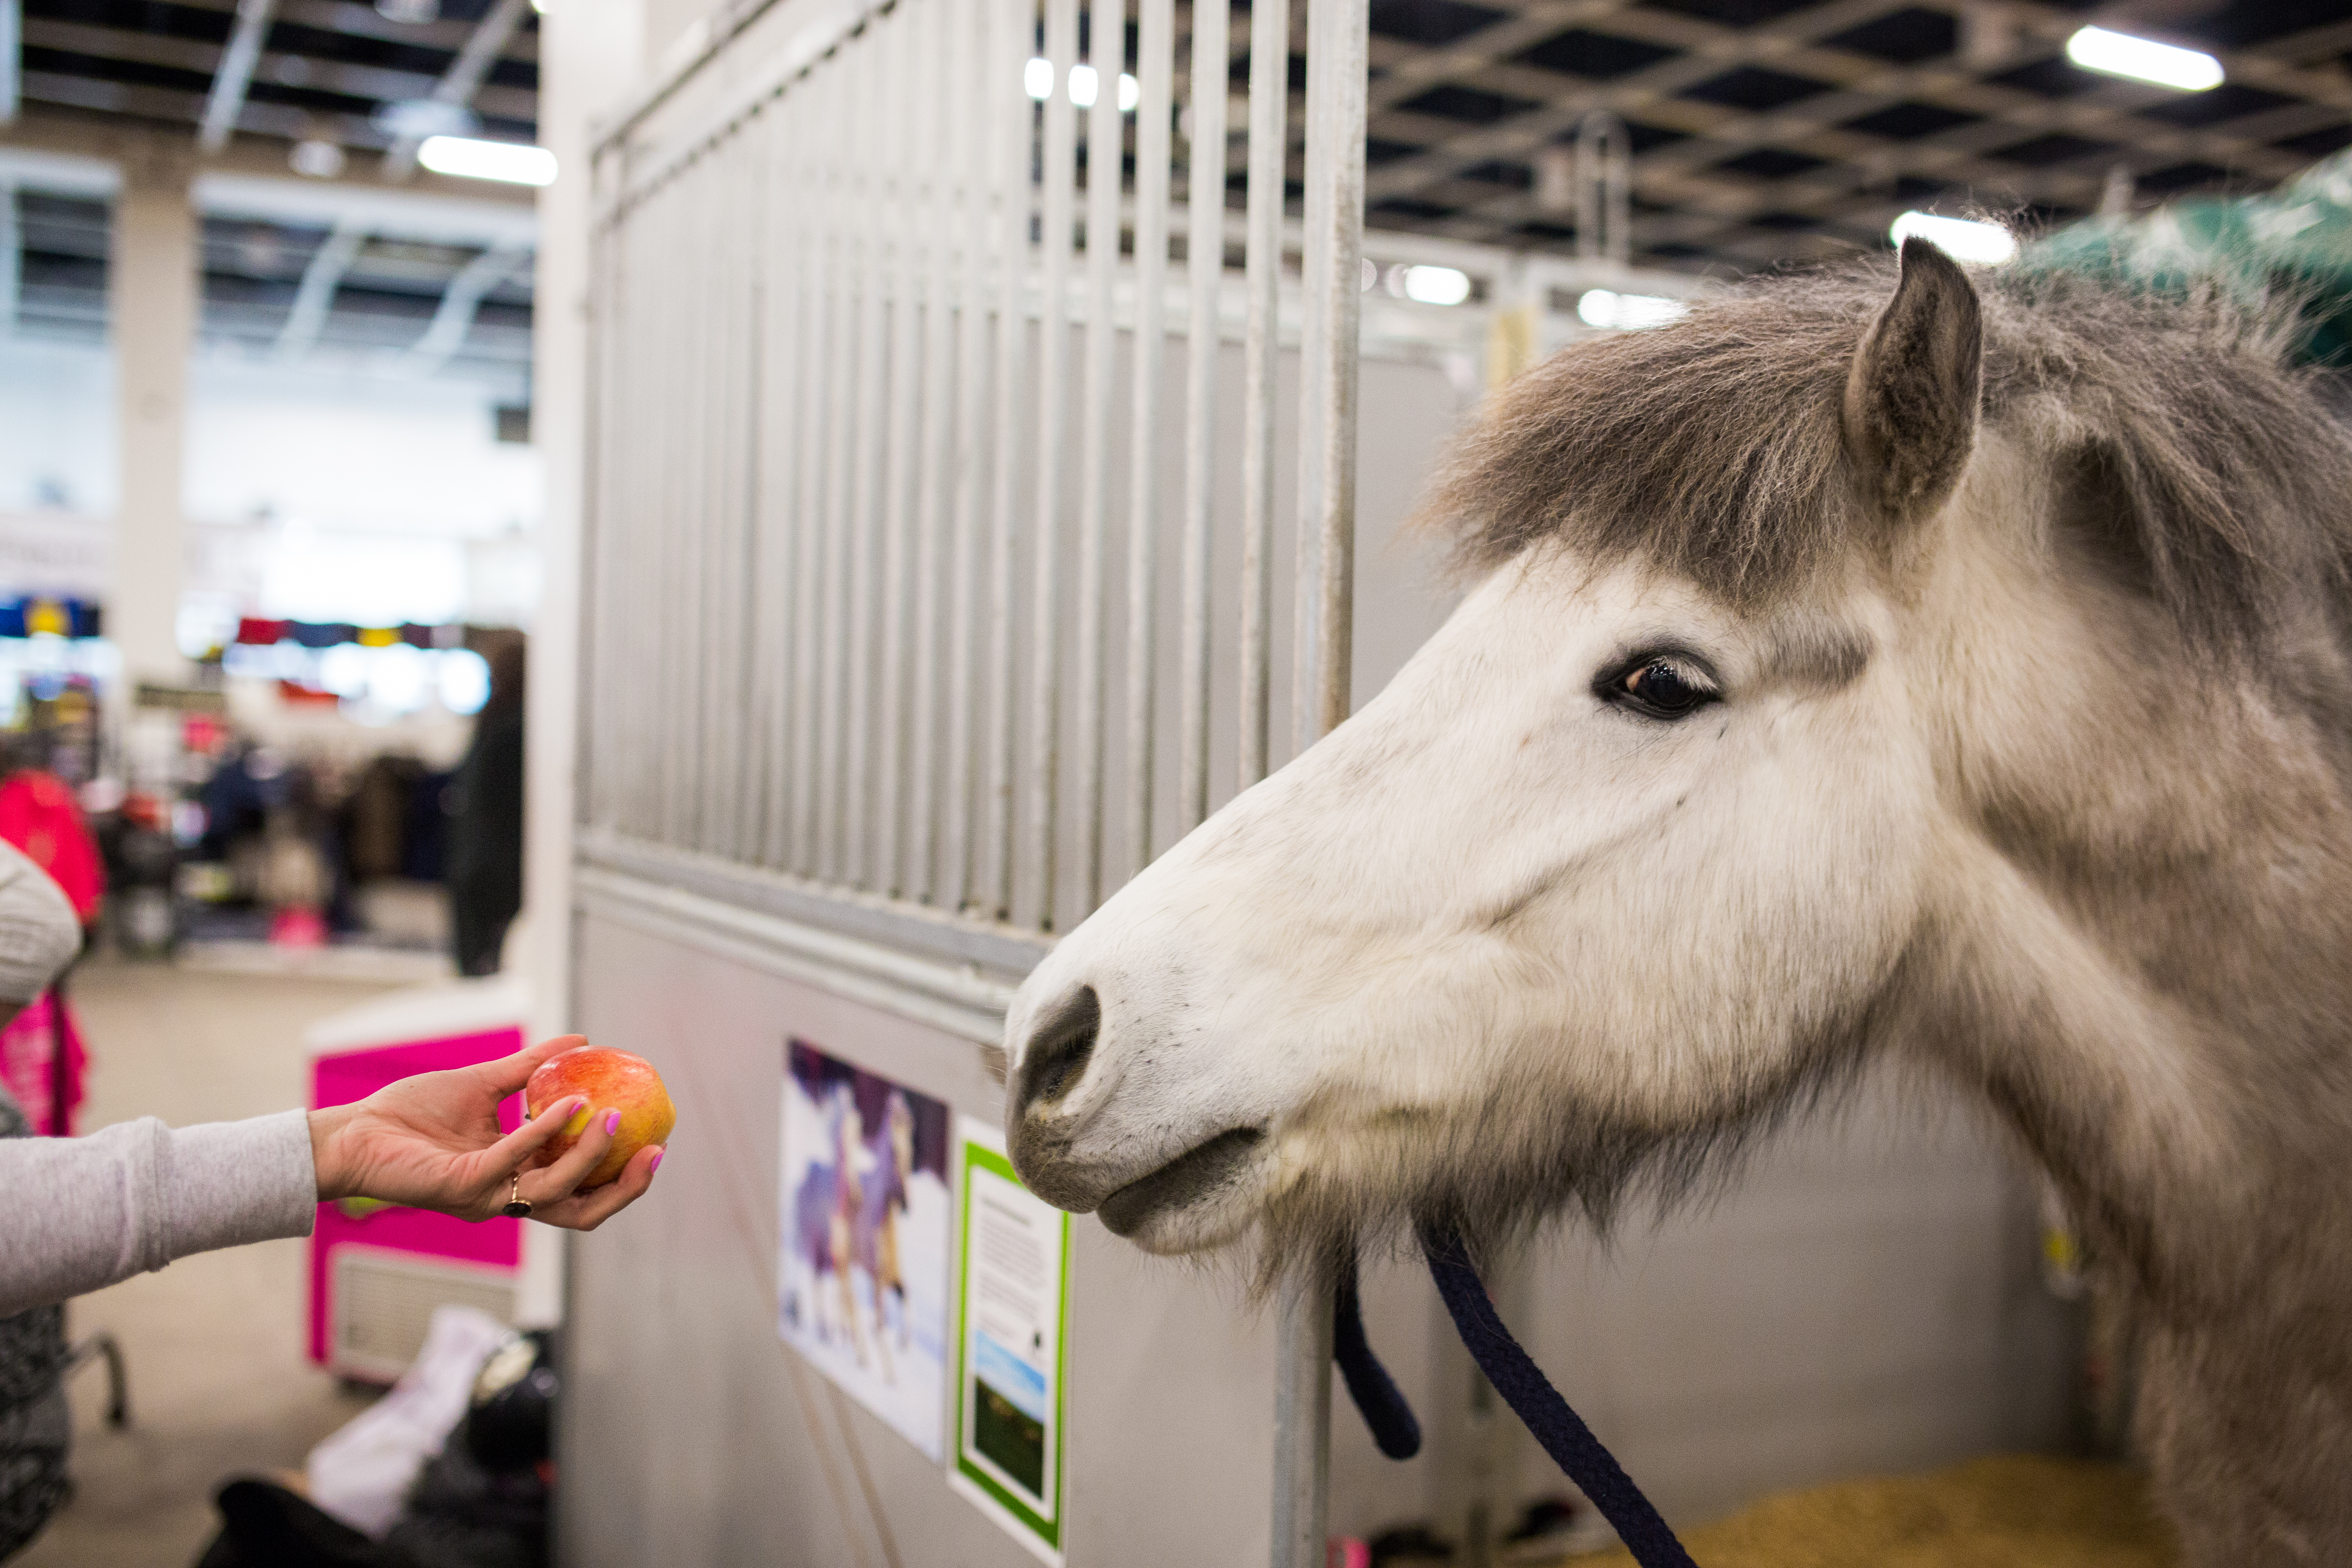 Helsinki Horse Fair: Bloggaajat ovat digiajan mielipidevaikuttajia